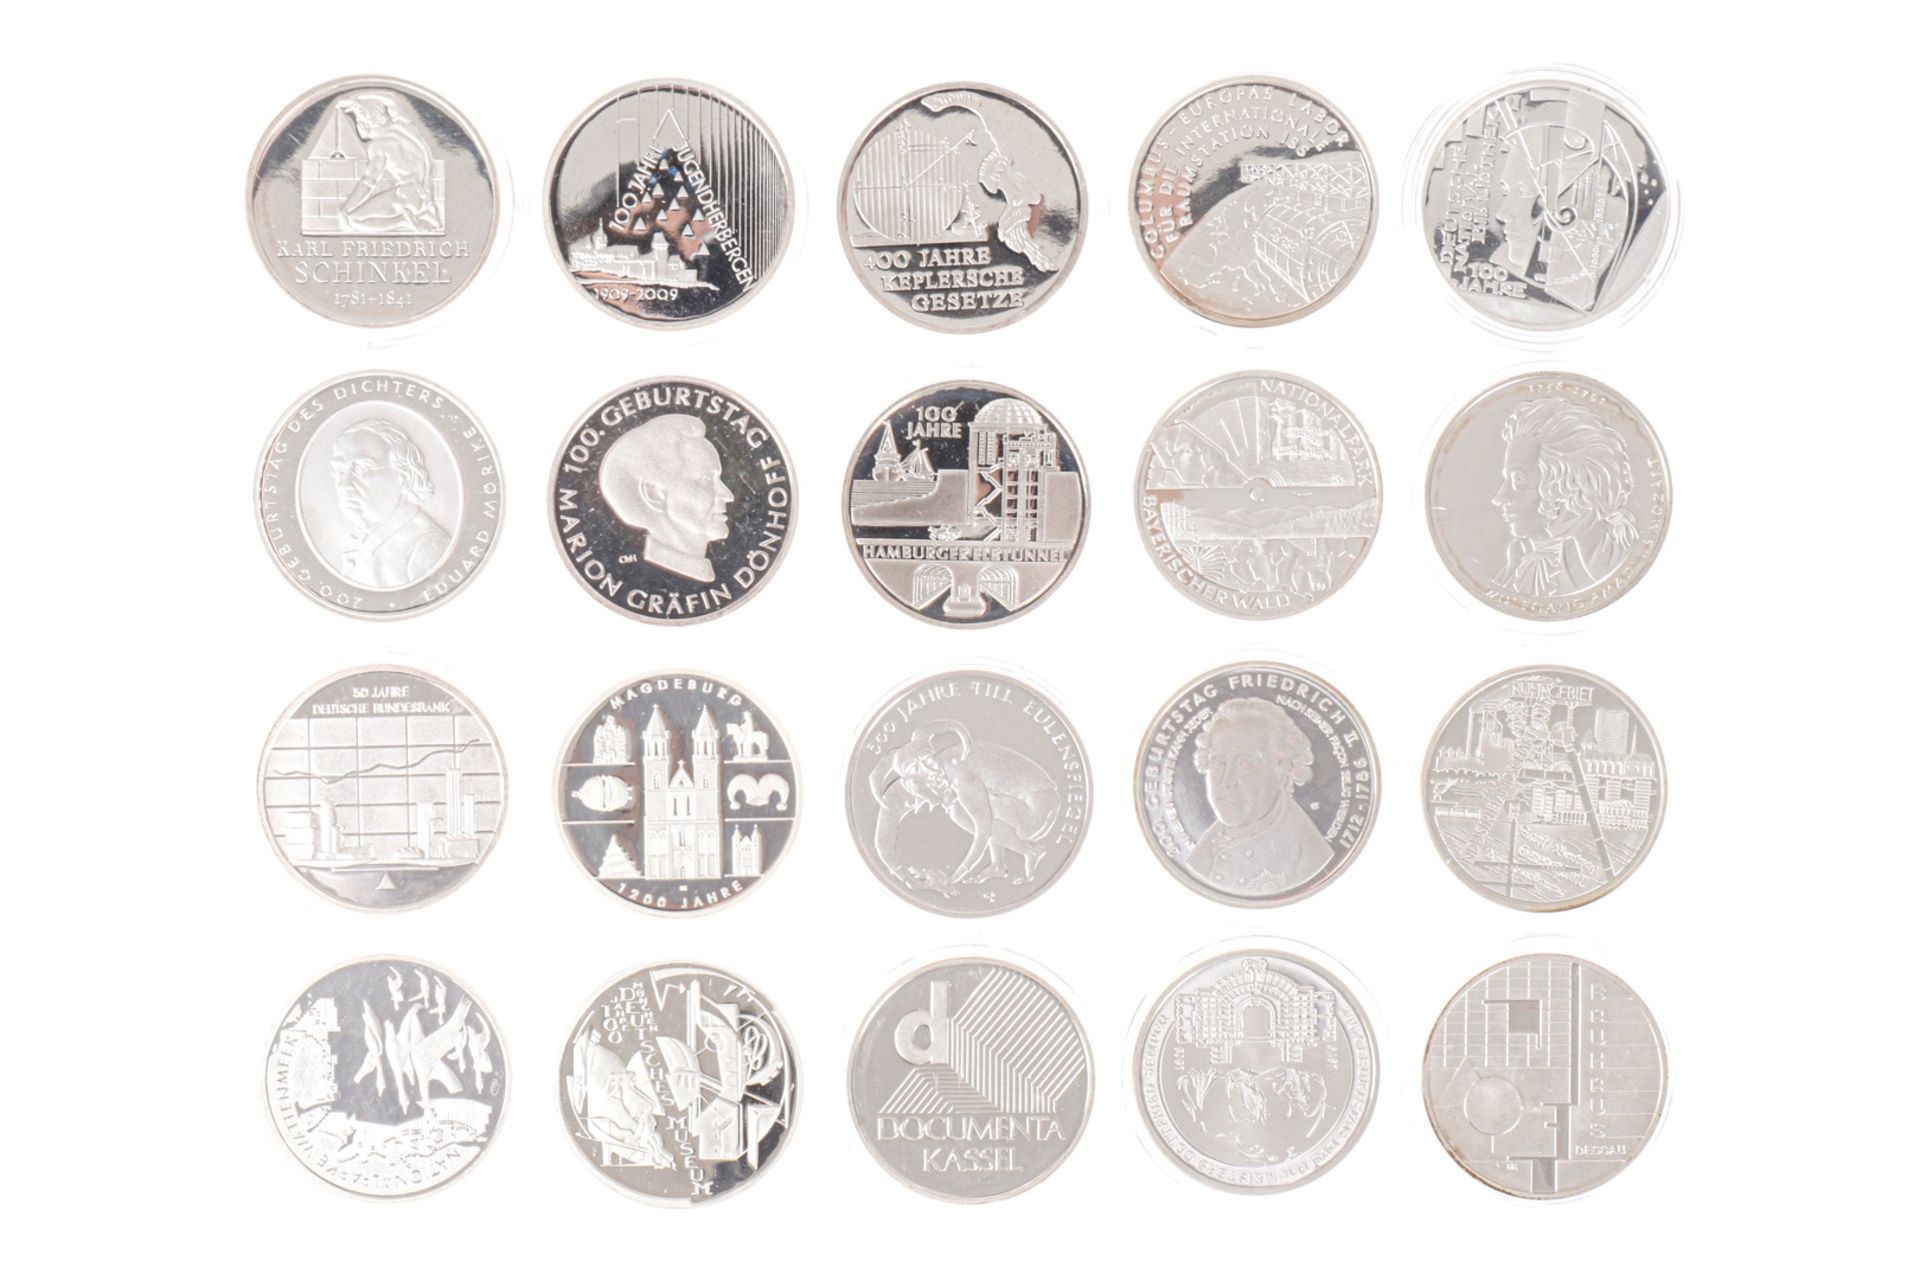 Bundesrepublik Deutschland Silbermünzen: 20 x 10 Euro in Spiegelglanz, alles versch. Ausgaben in Kap